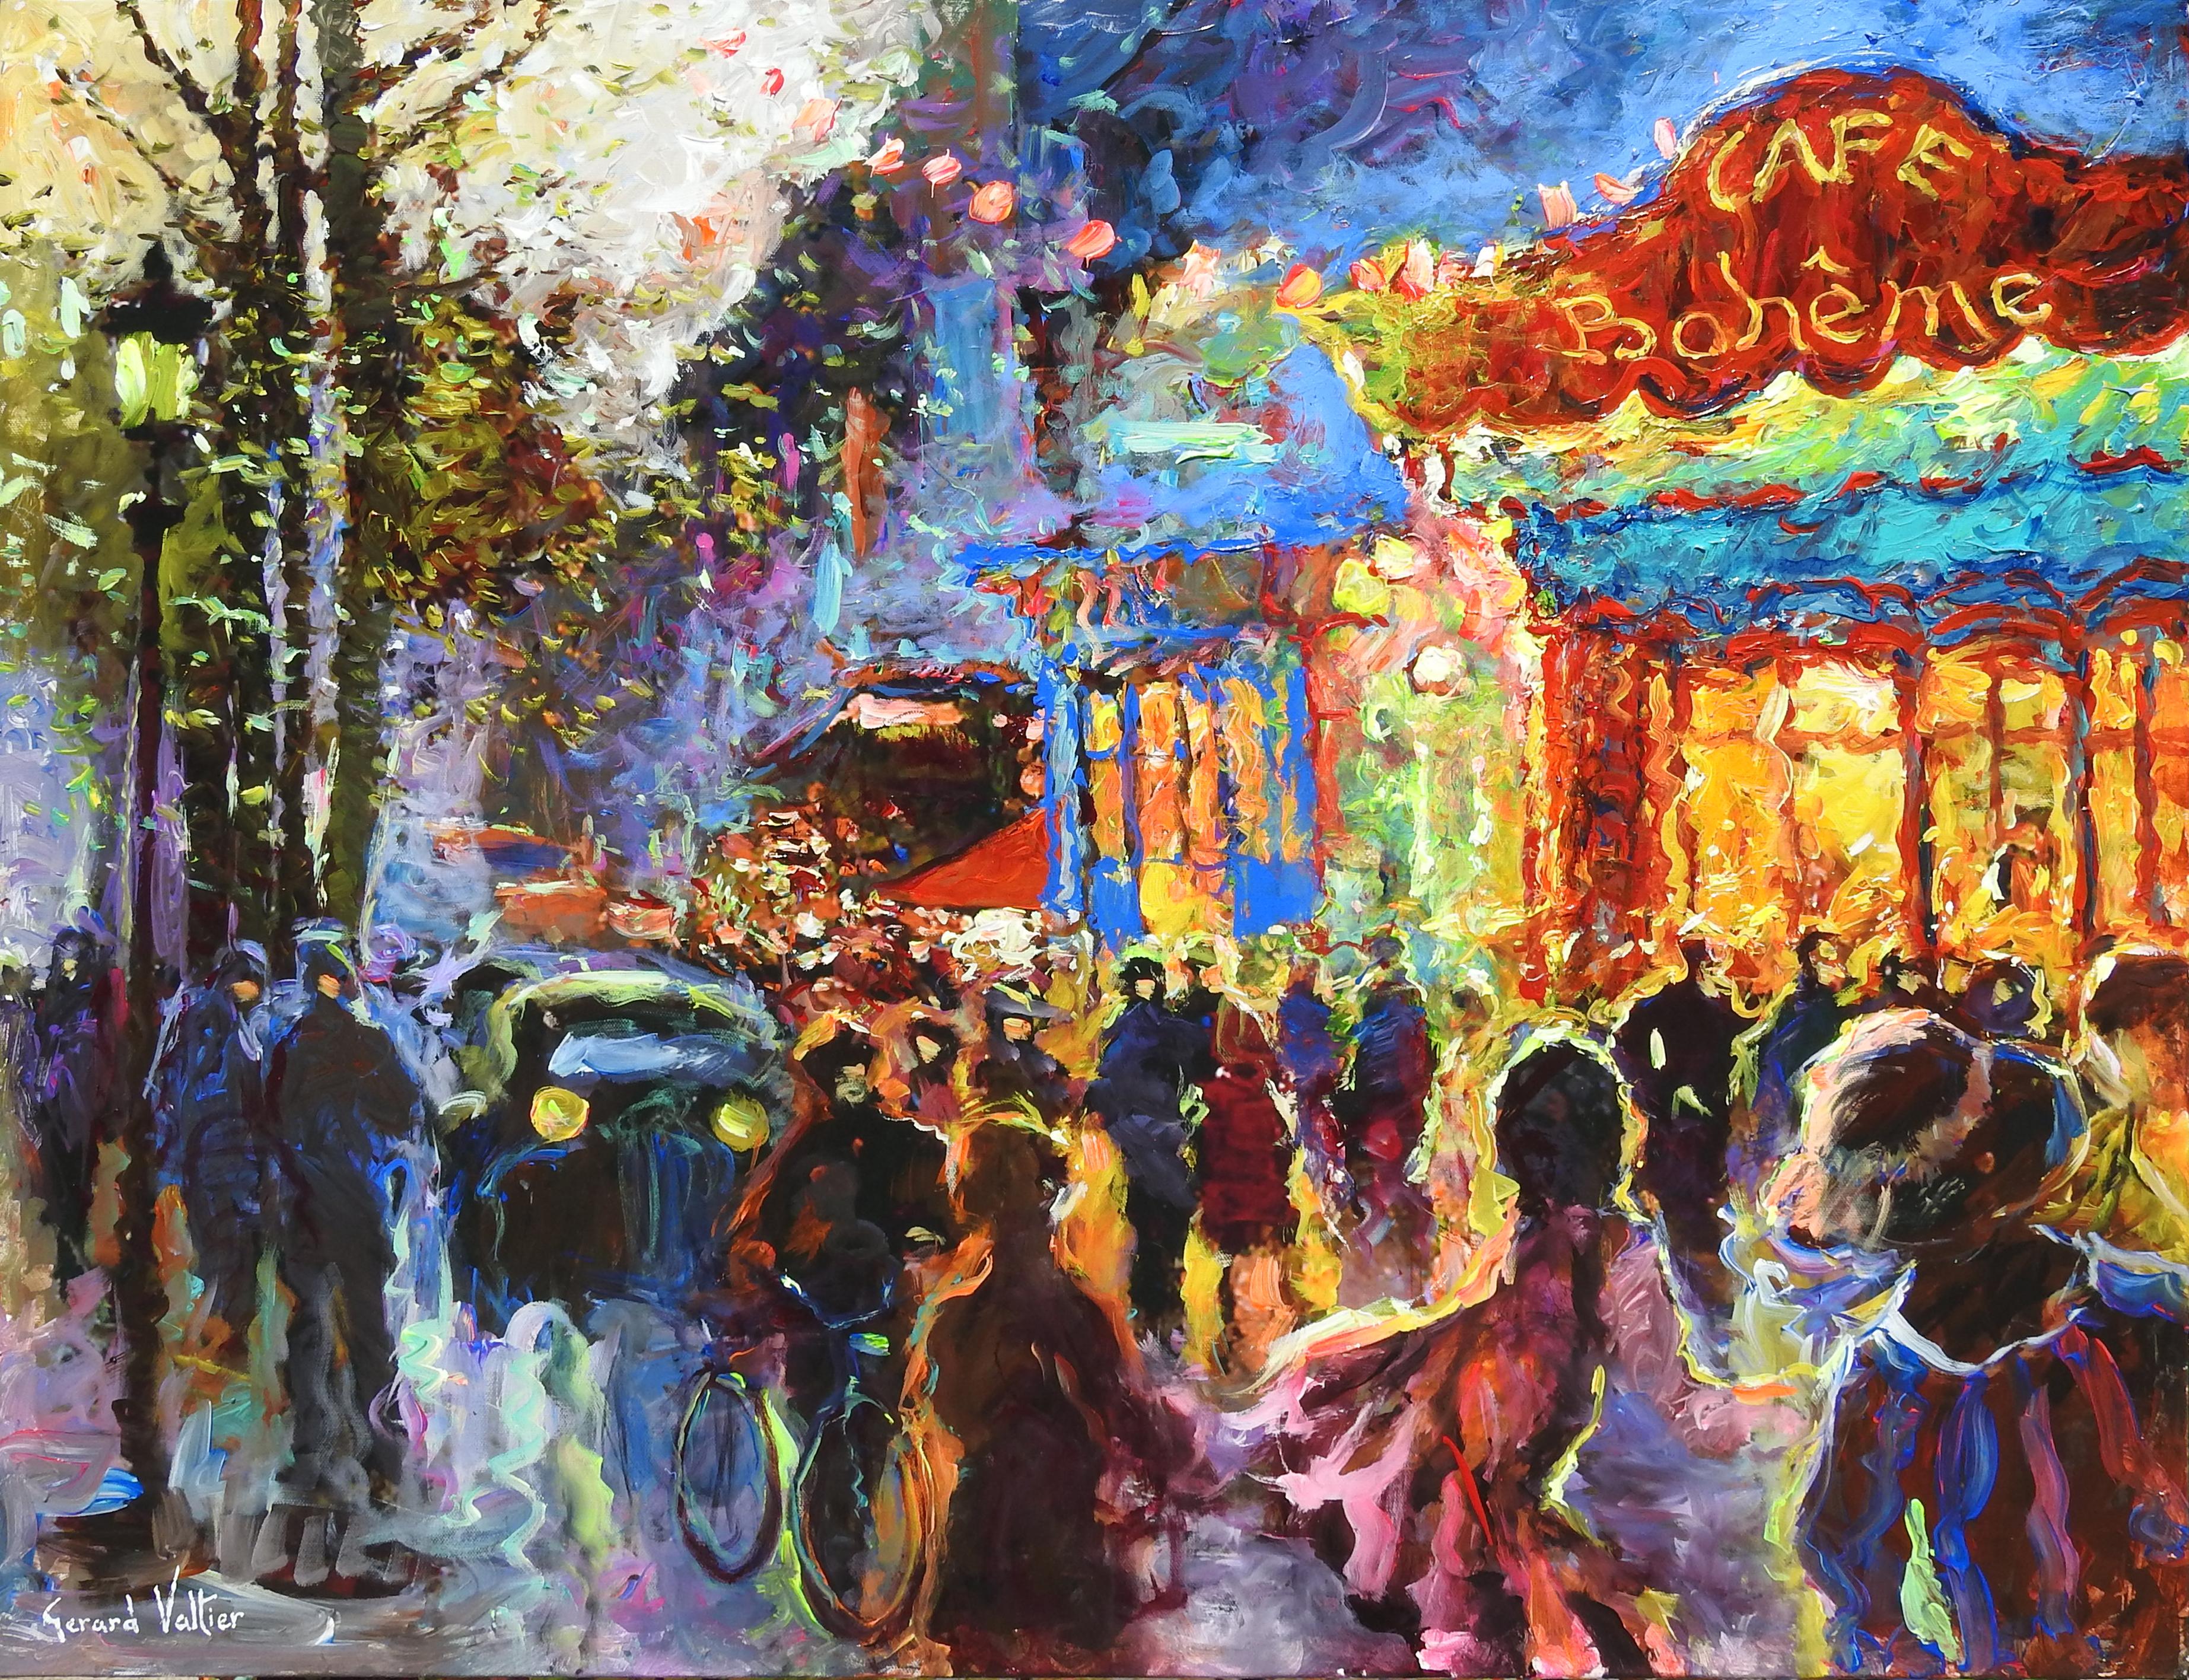 "Le Cafe Boheme De Paris" von Gerard Valtier ist ein Original-Öl auf Leinwand, die Maßnahmen 29x36 Zoll. Dieses impressionistische Gemälde hat eine Reihe von leuchtenden Farben, um ein lustiges und musikalisches Bild zu schaffen. Die Menschen